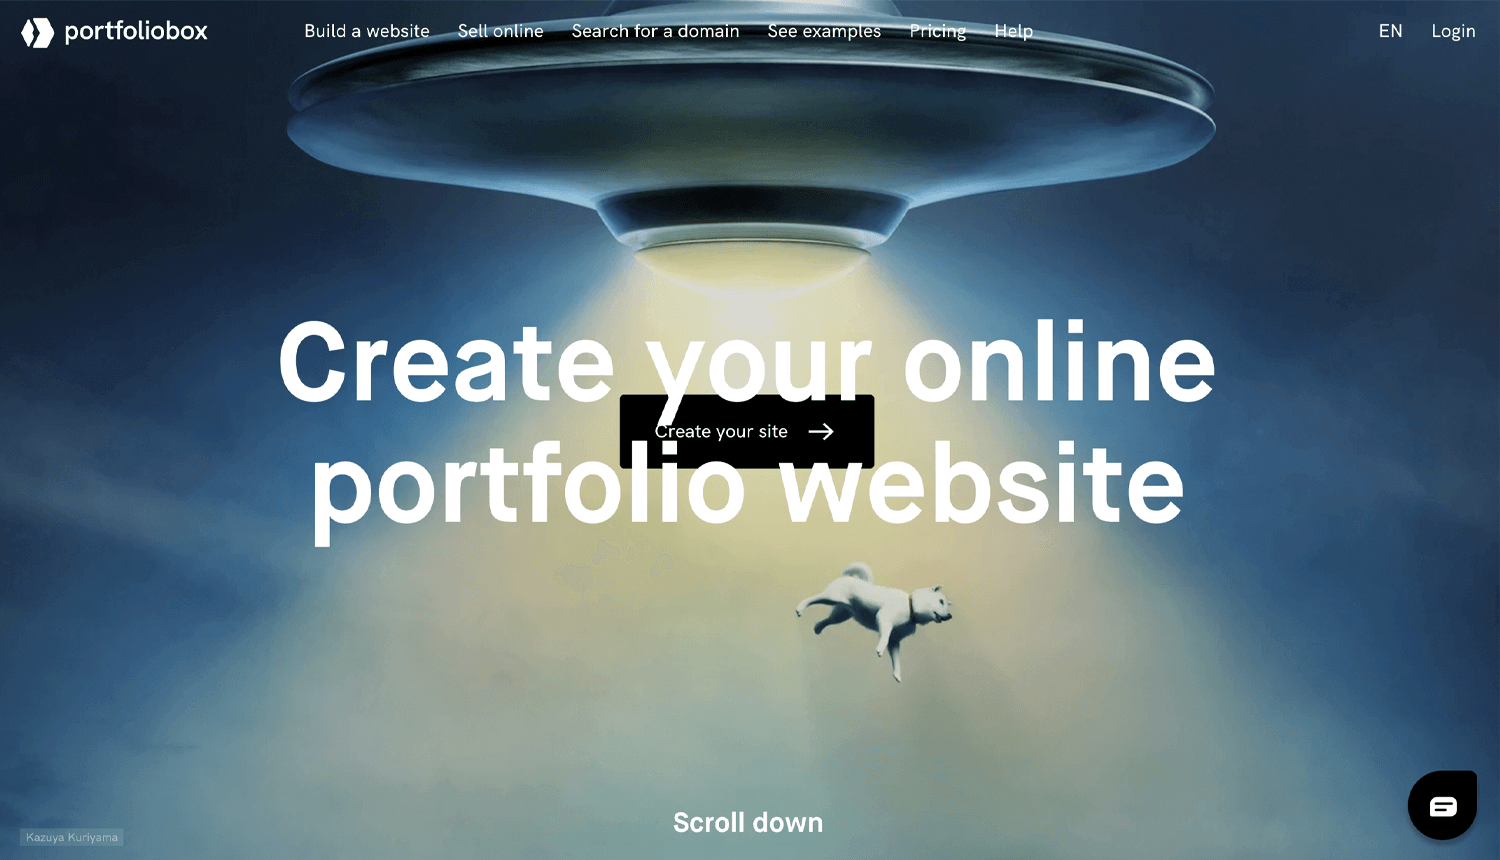 portfoliobox as website for ux designers and their portfolios